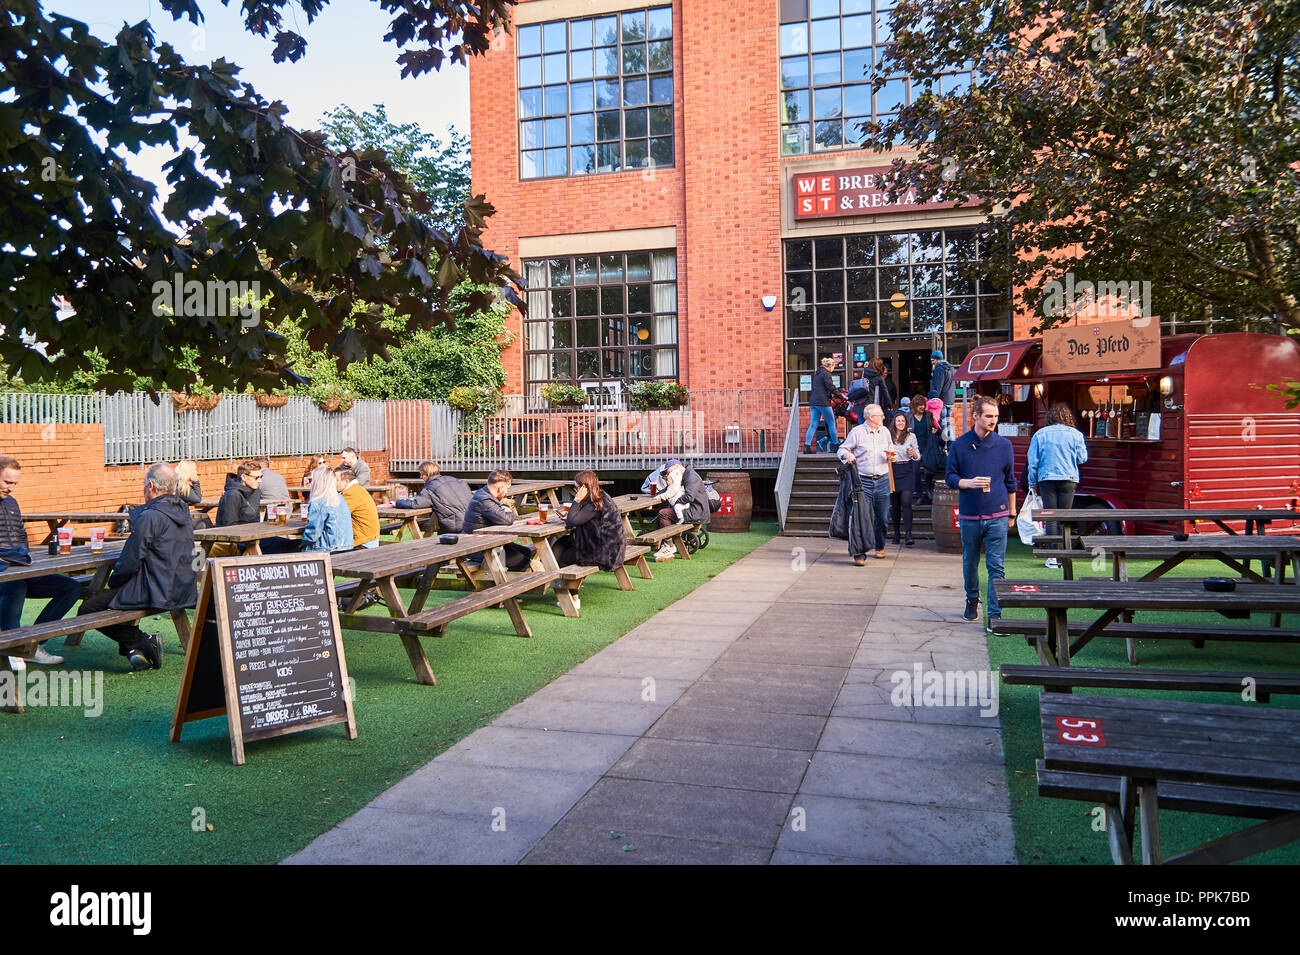 Café en plein air et une entrée à l'ouest sur le livre vert, un restaurant populaire et brasserie à Glasgow. Banque D'Images